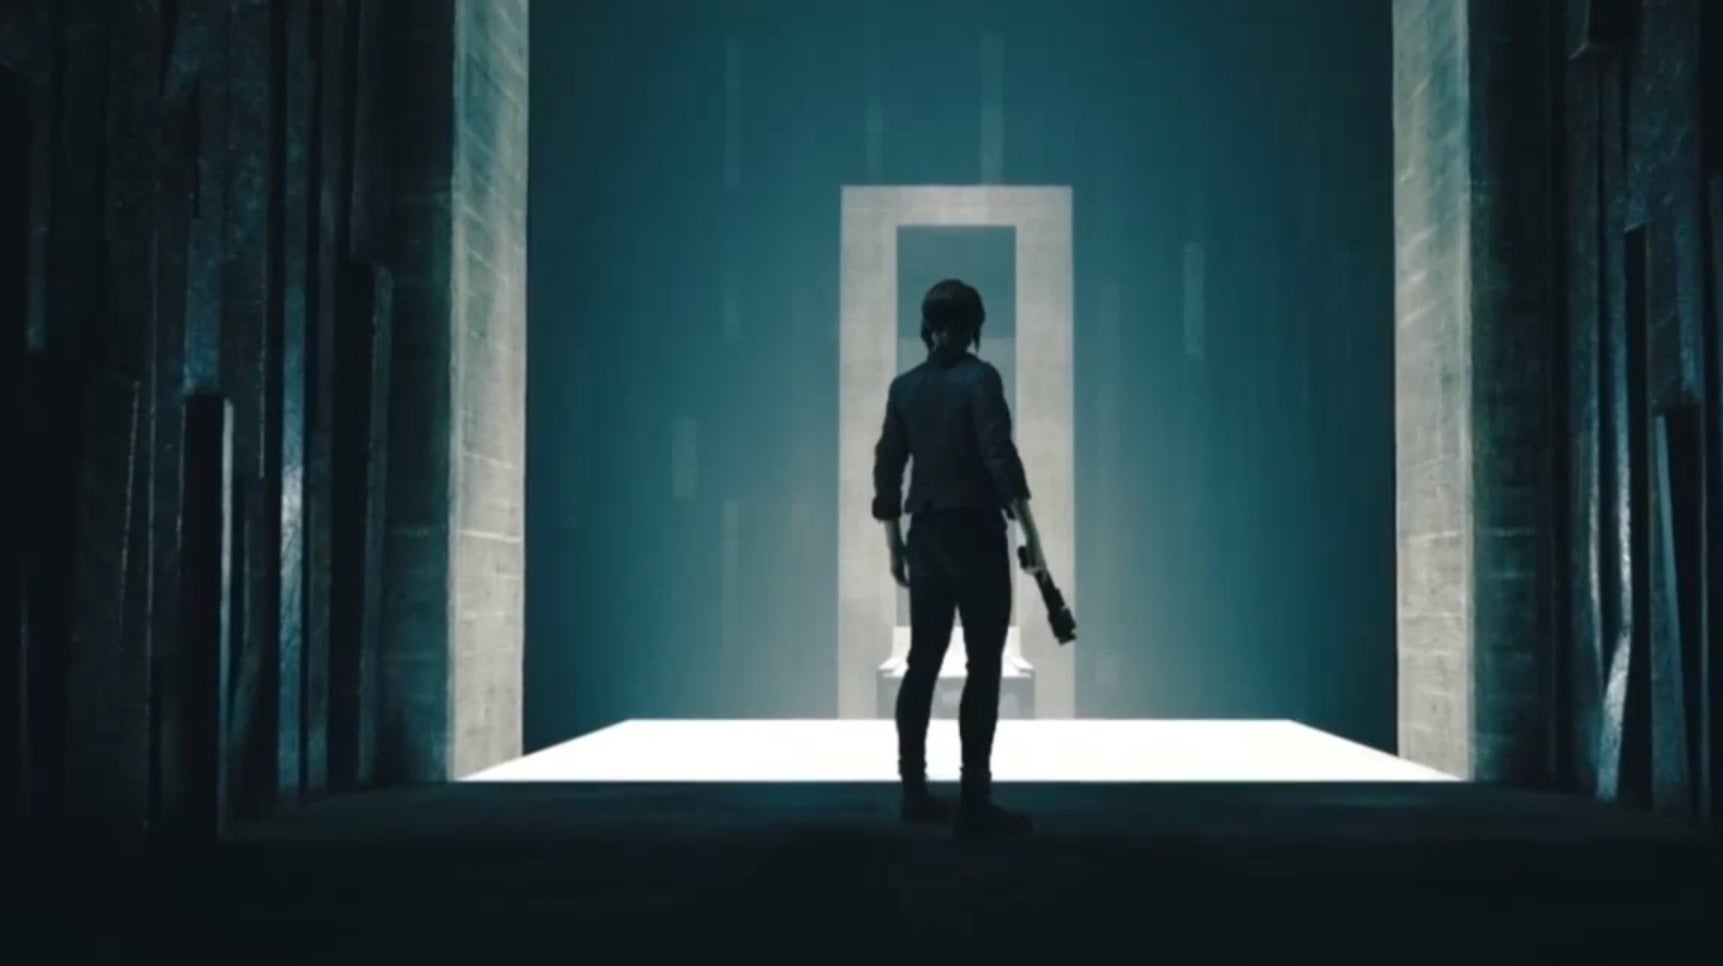 Obrazki dla Control to nowa gra twórców Alana Wake'a